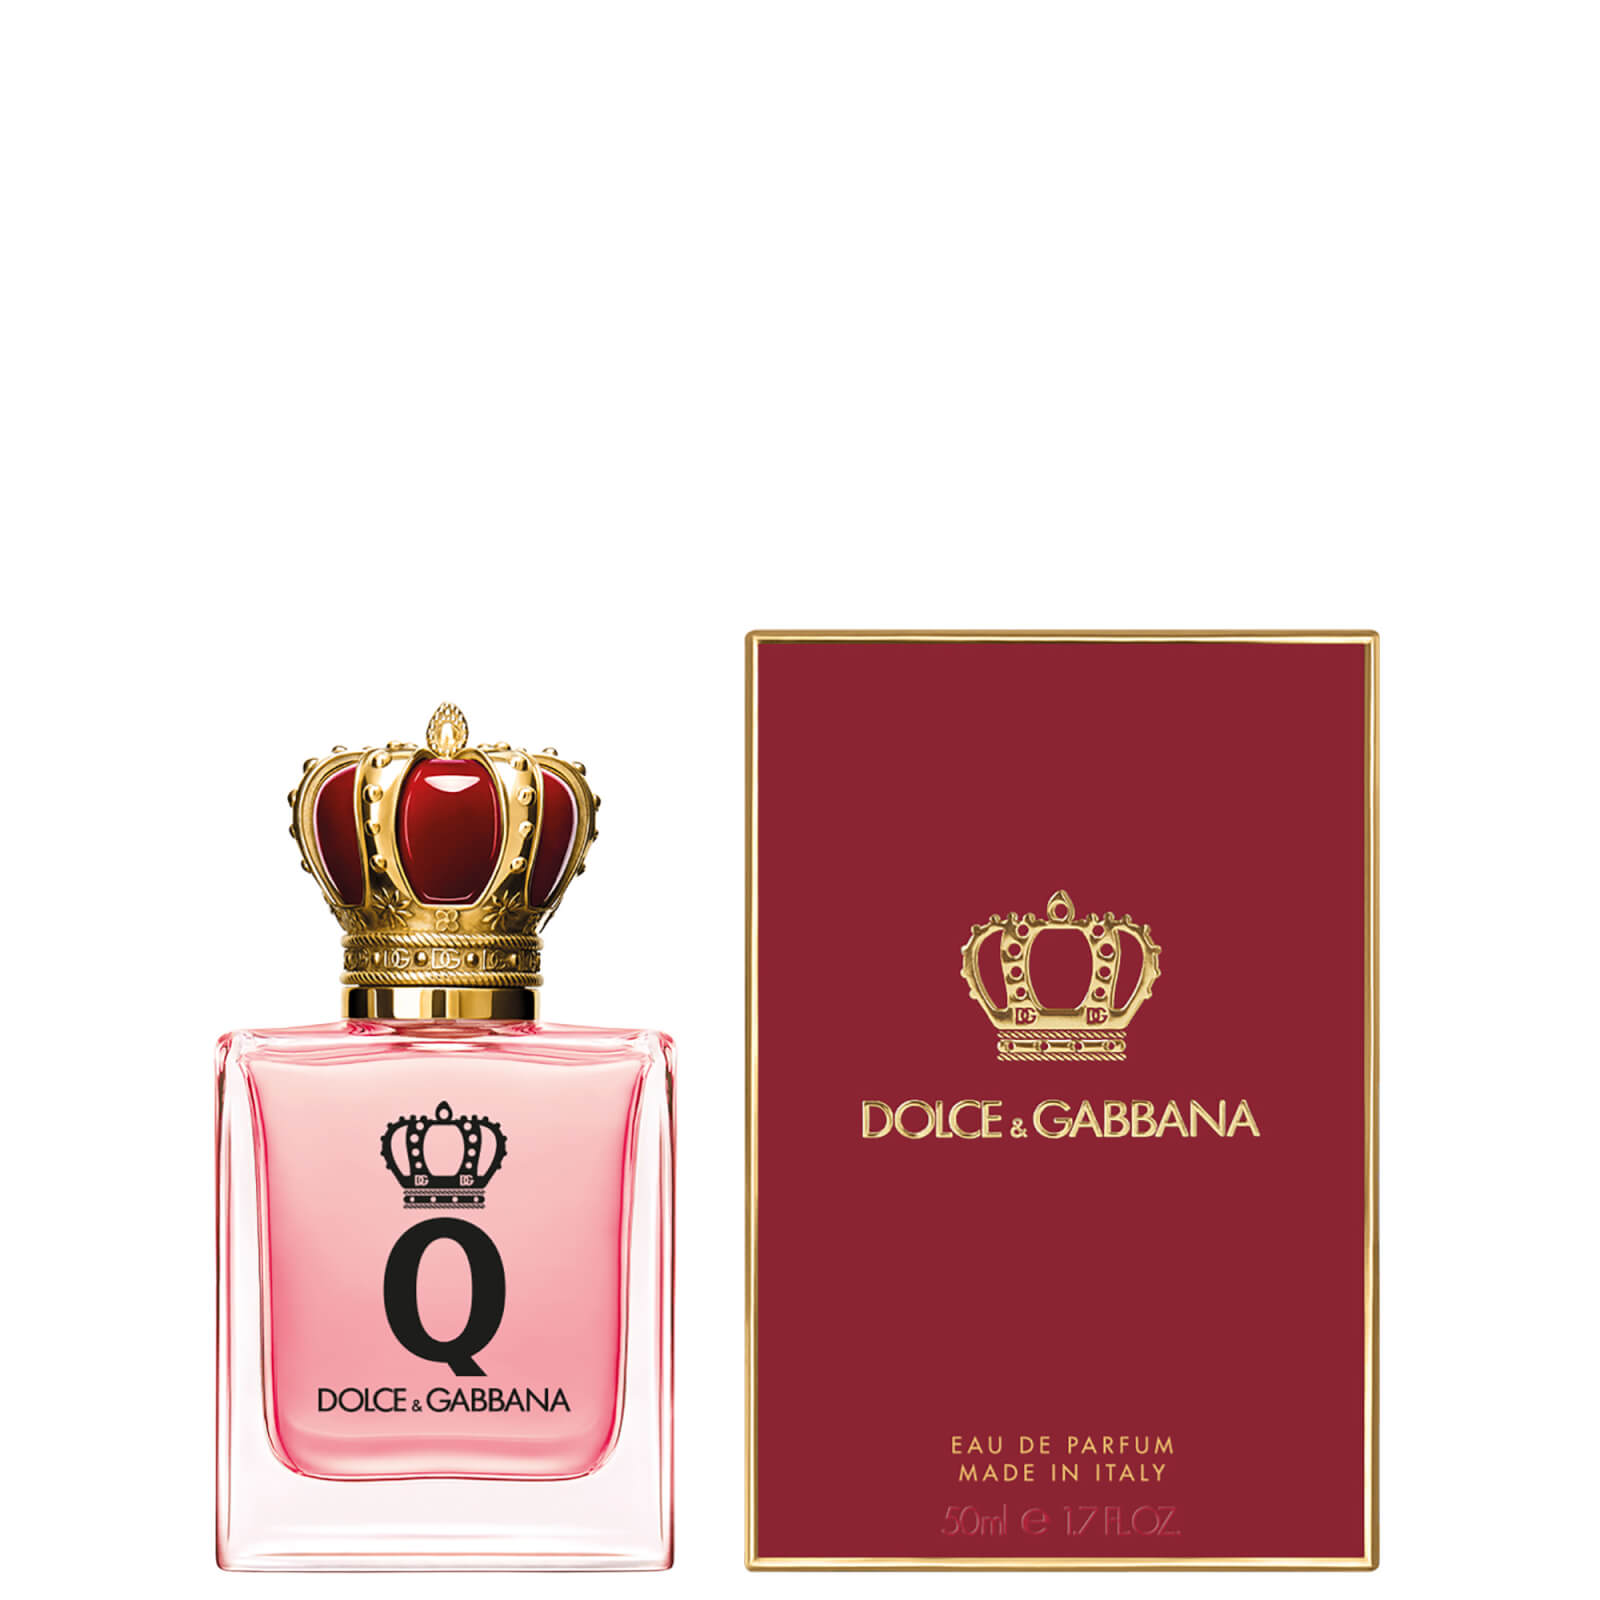 Dolce&Gabbana Q Eau de Parfum 50ml von Dolce&Gabbana